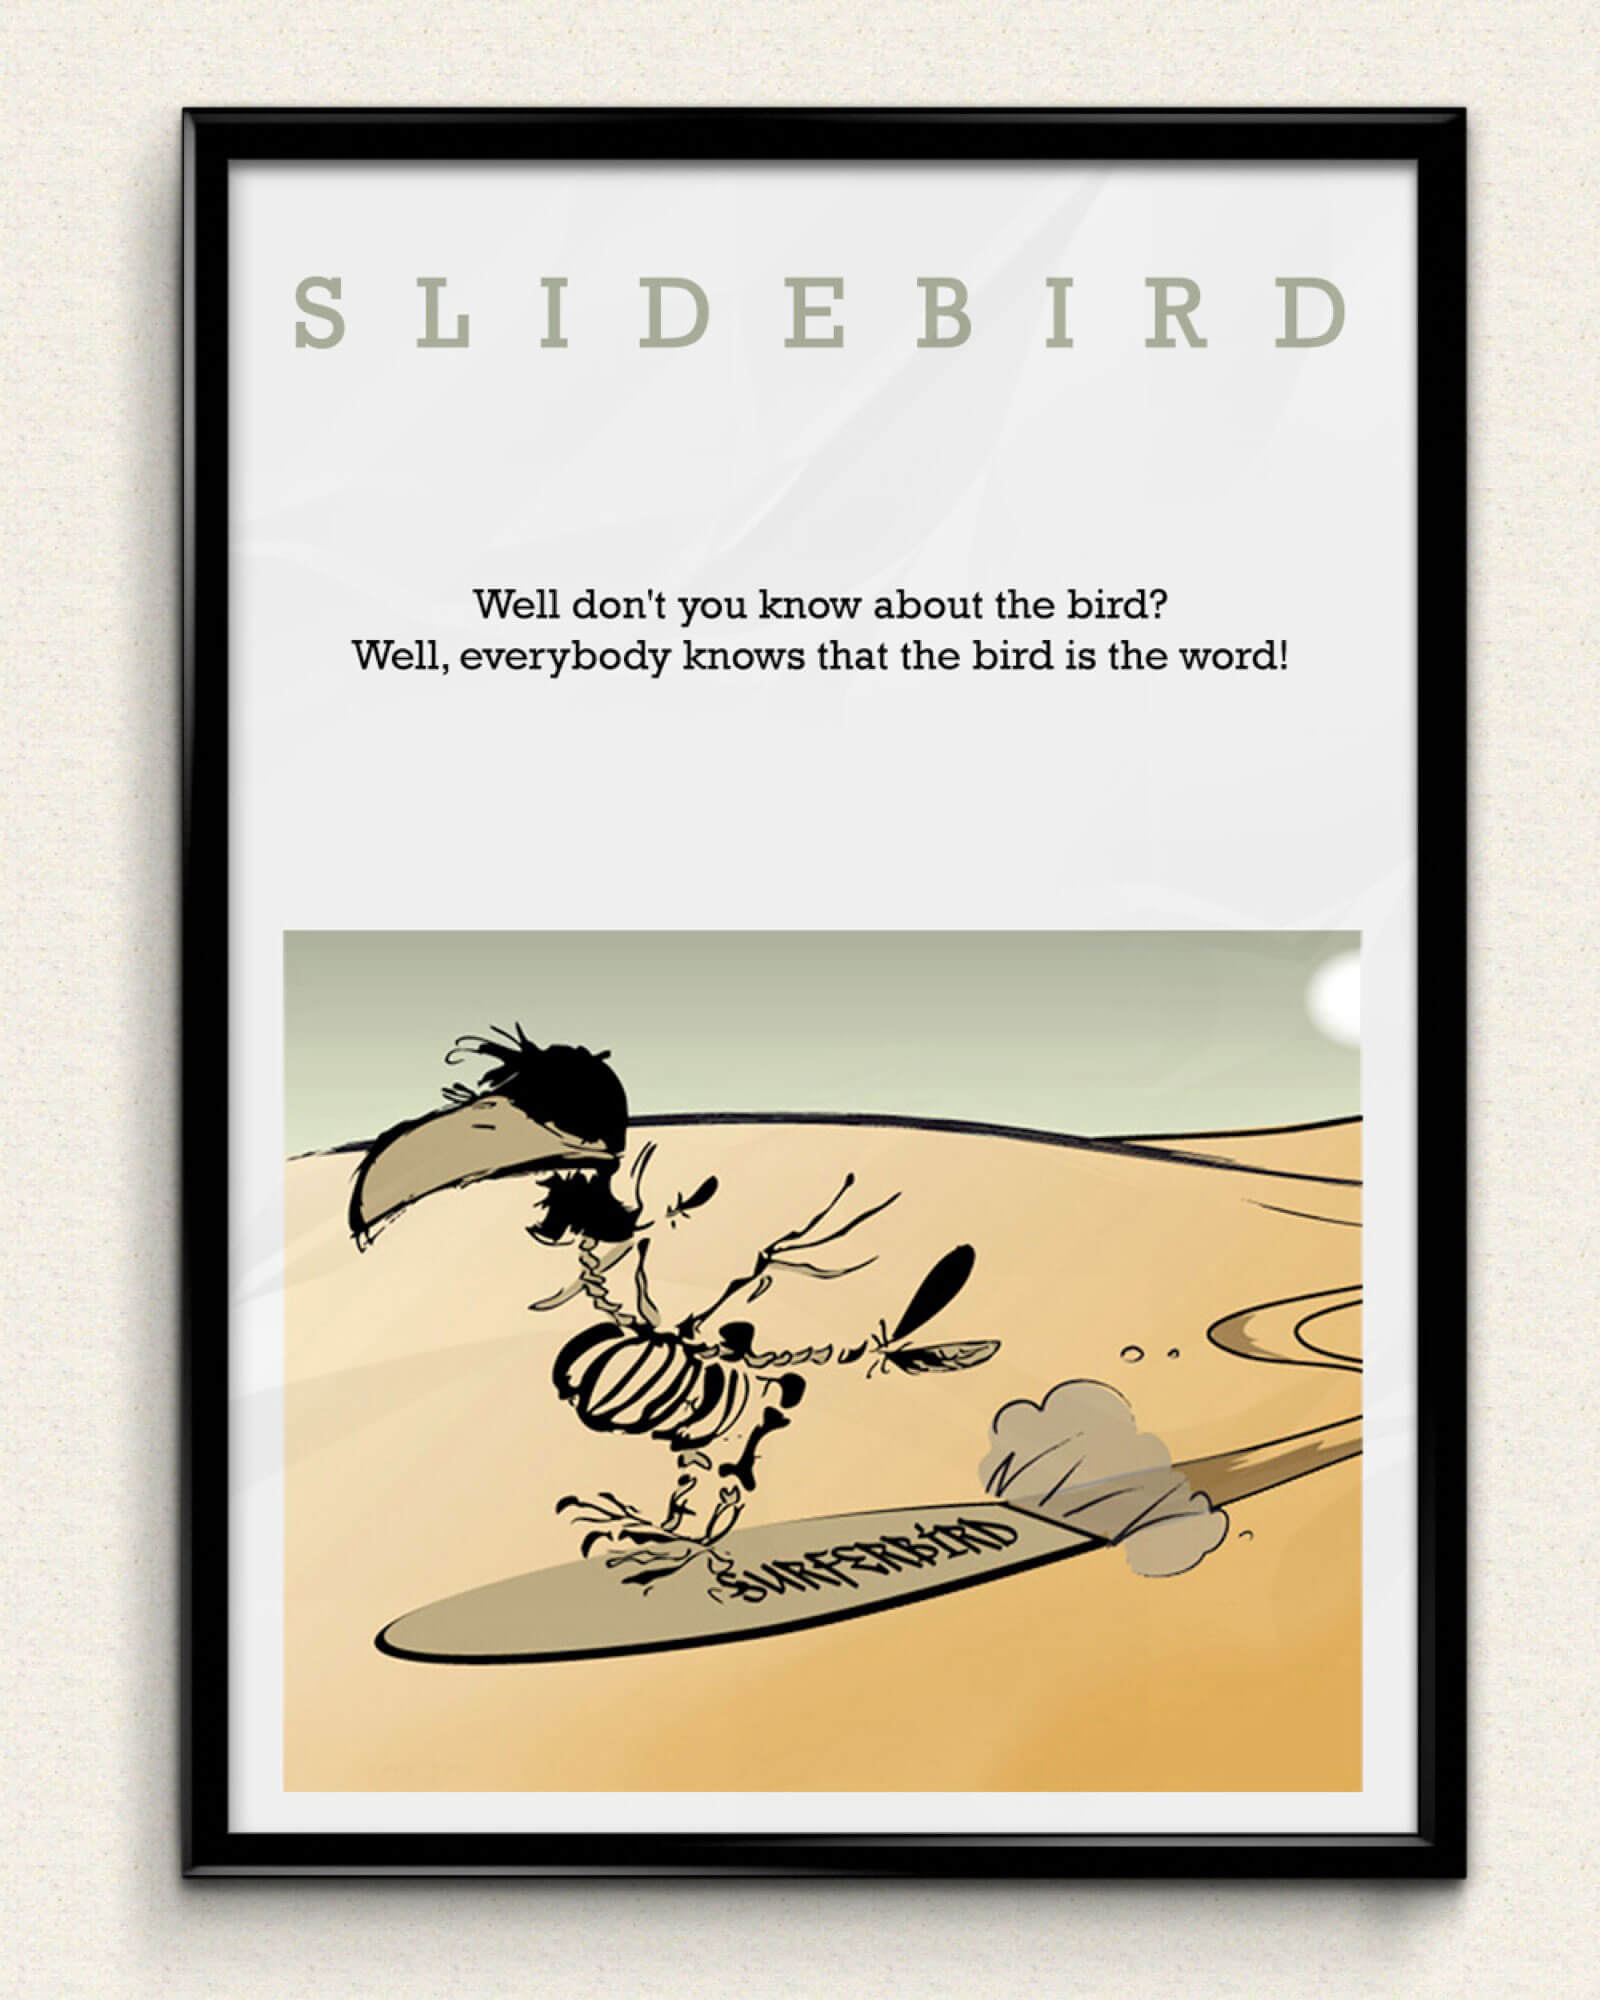 Slidebird, Wien: Design-Contest